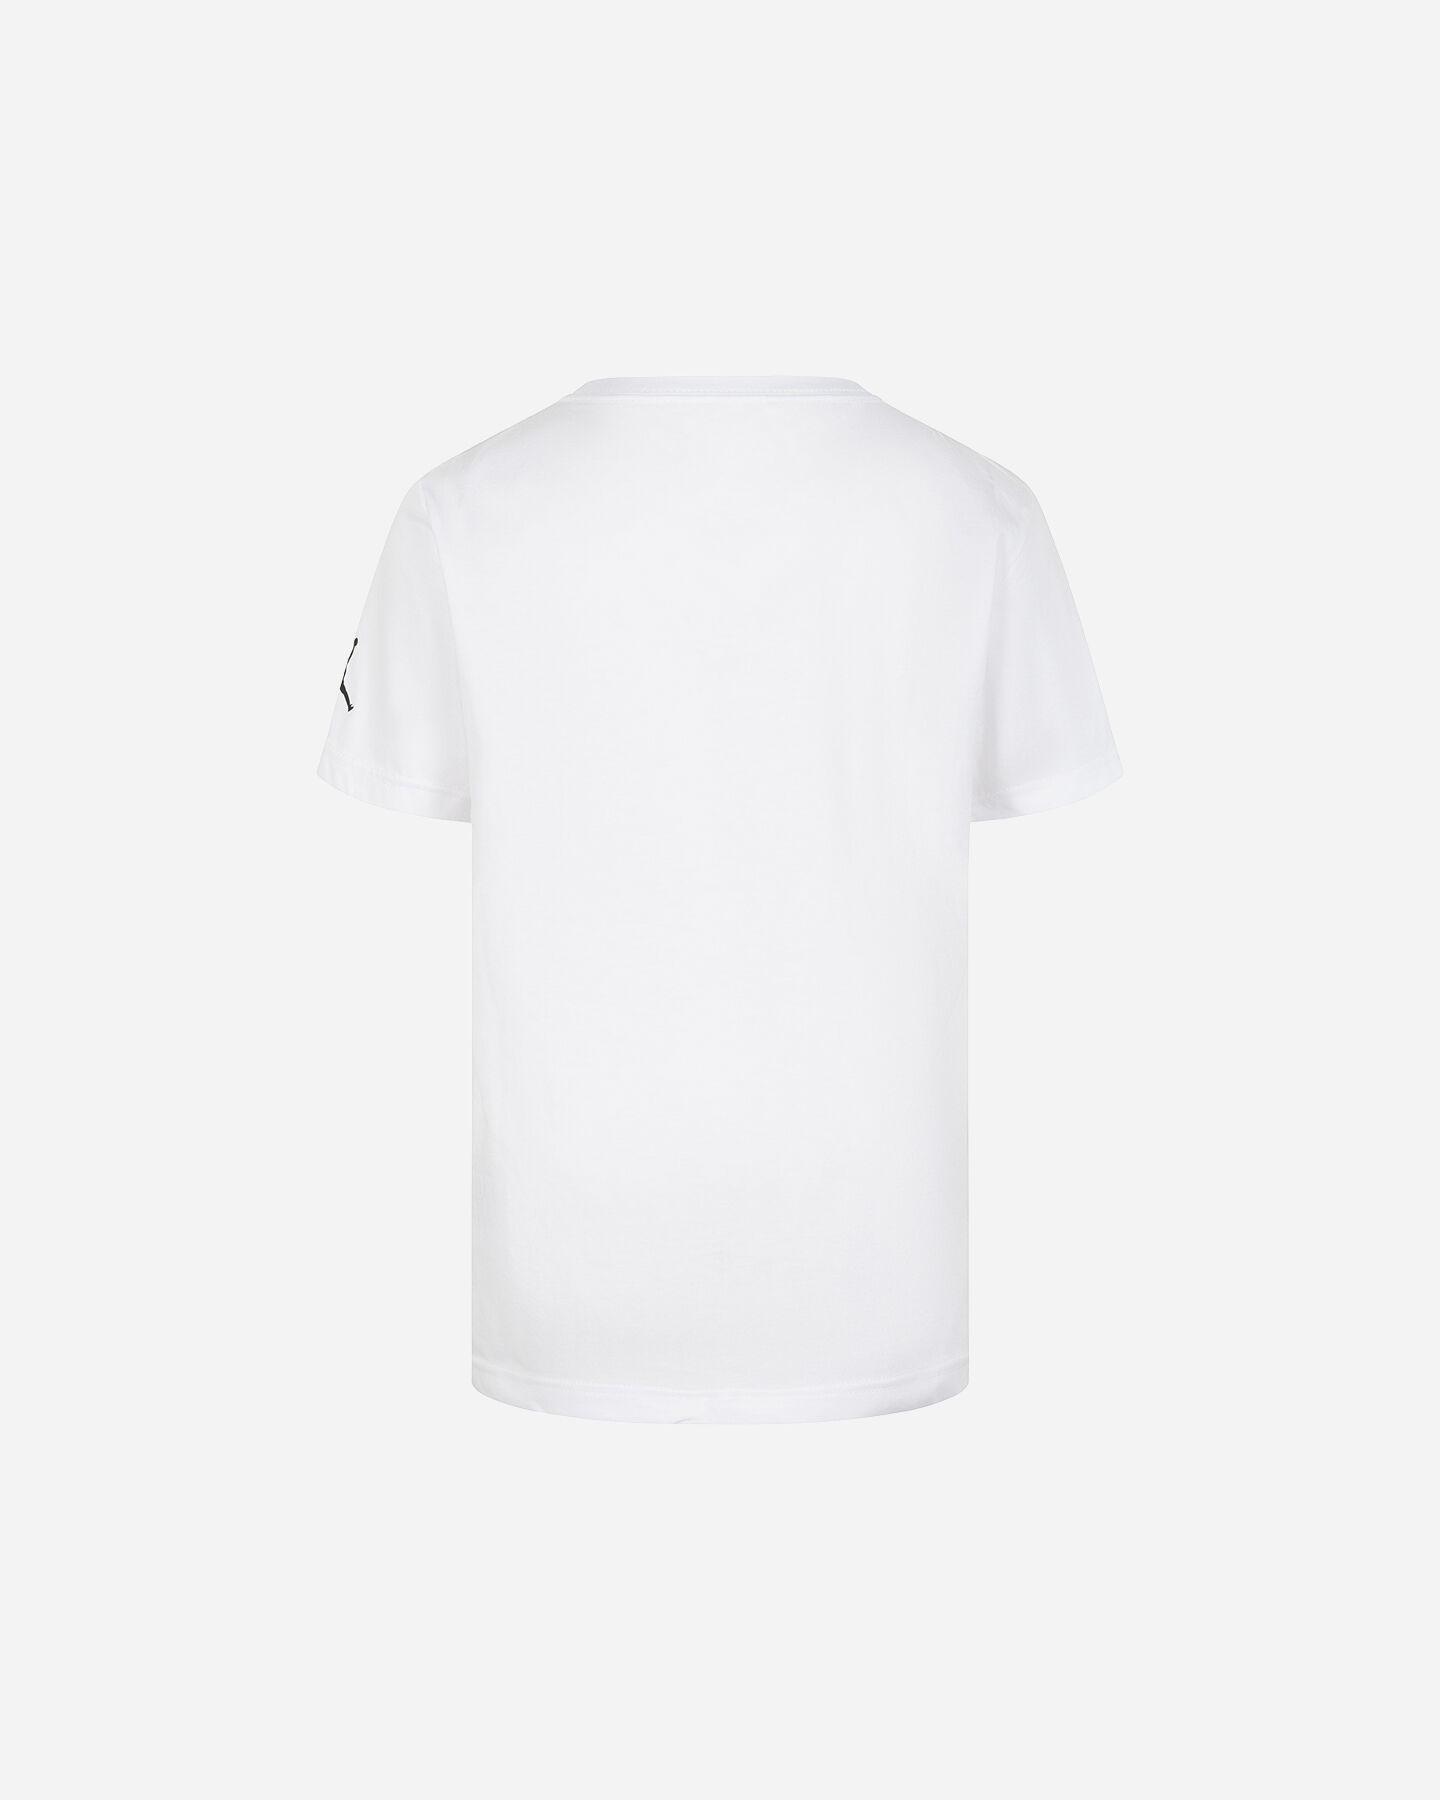  T-Shirt NIKE JORDAN RETRO JR S5640201|001|8-10Y scatto 1